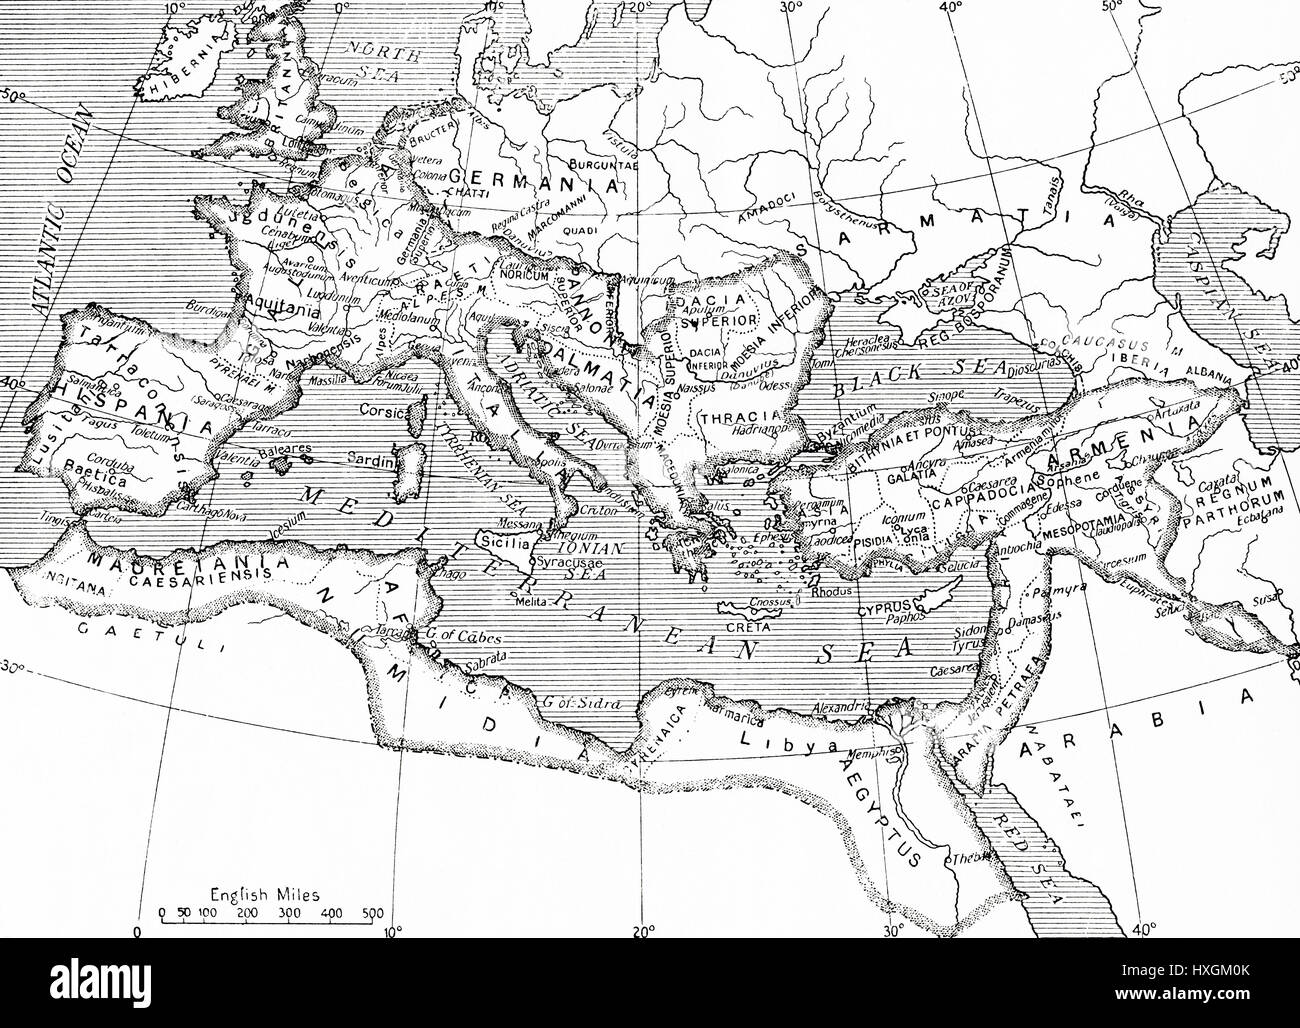 Mappa dell'Impero Romano 14 D.C. - 117 D.C. Da Hutchinson nella storia delle nazioni, pubblicato 1915. Foto Stock